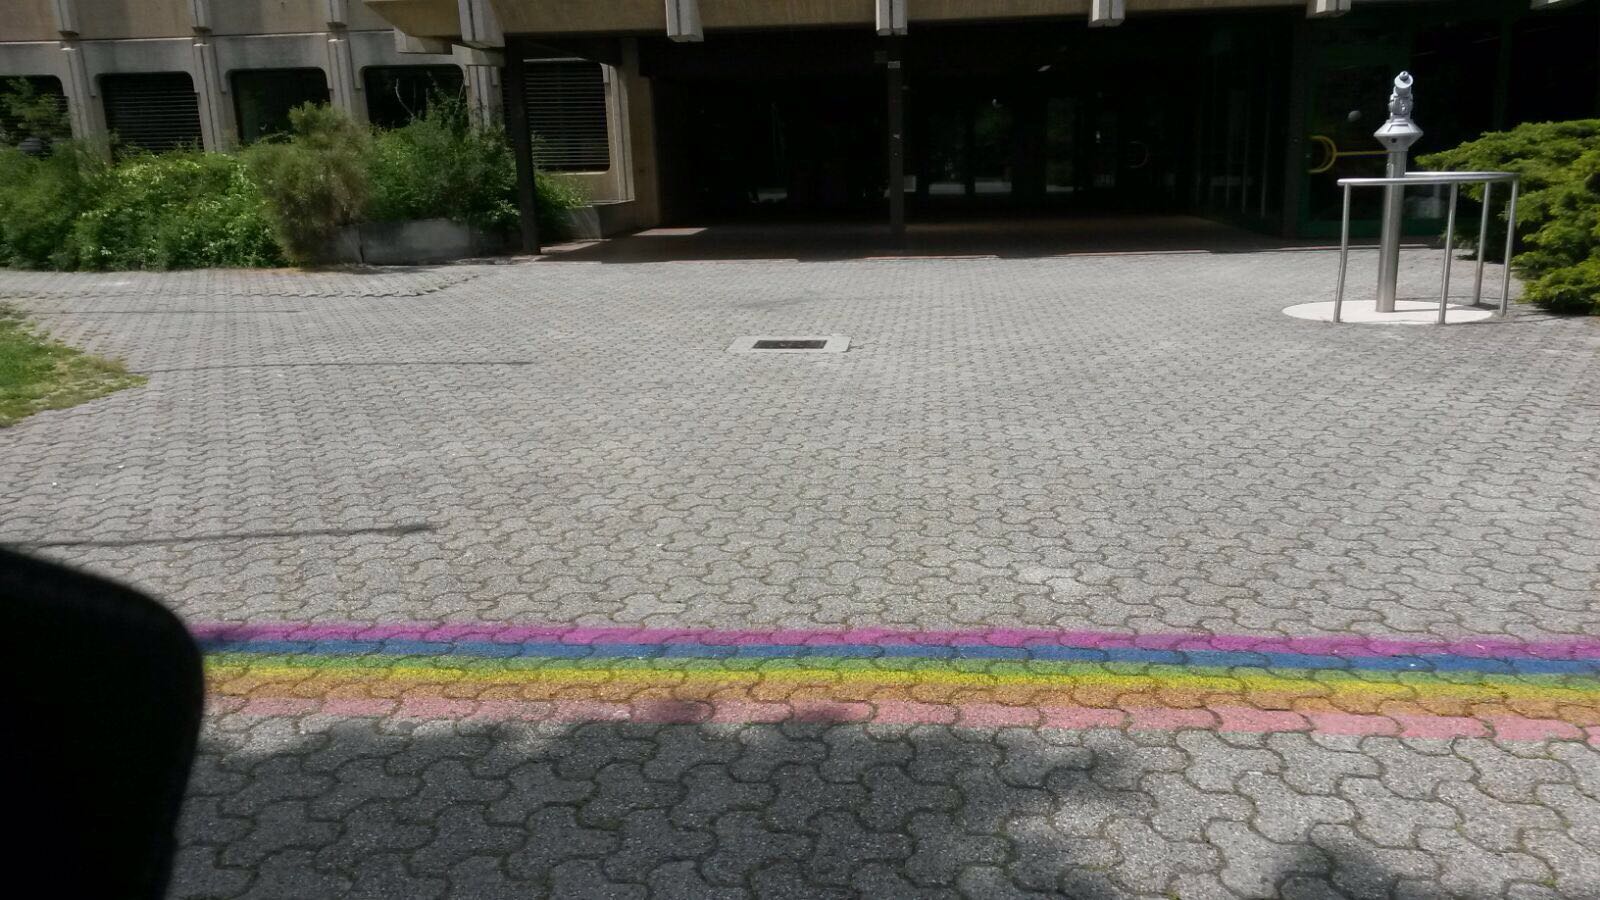 Un arc-en-ciel, symbole des personnes LGBT, est apparu dans la cour des Creusets mercredi.